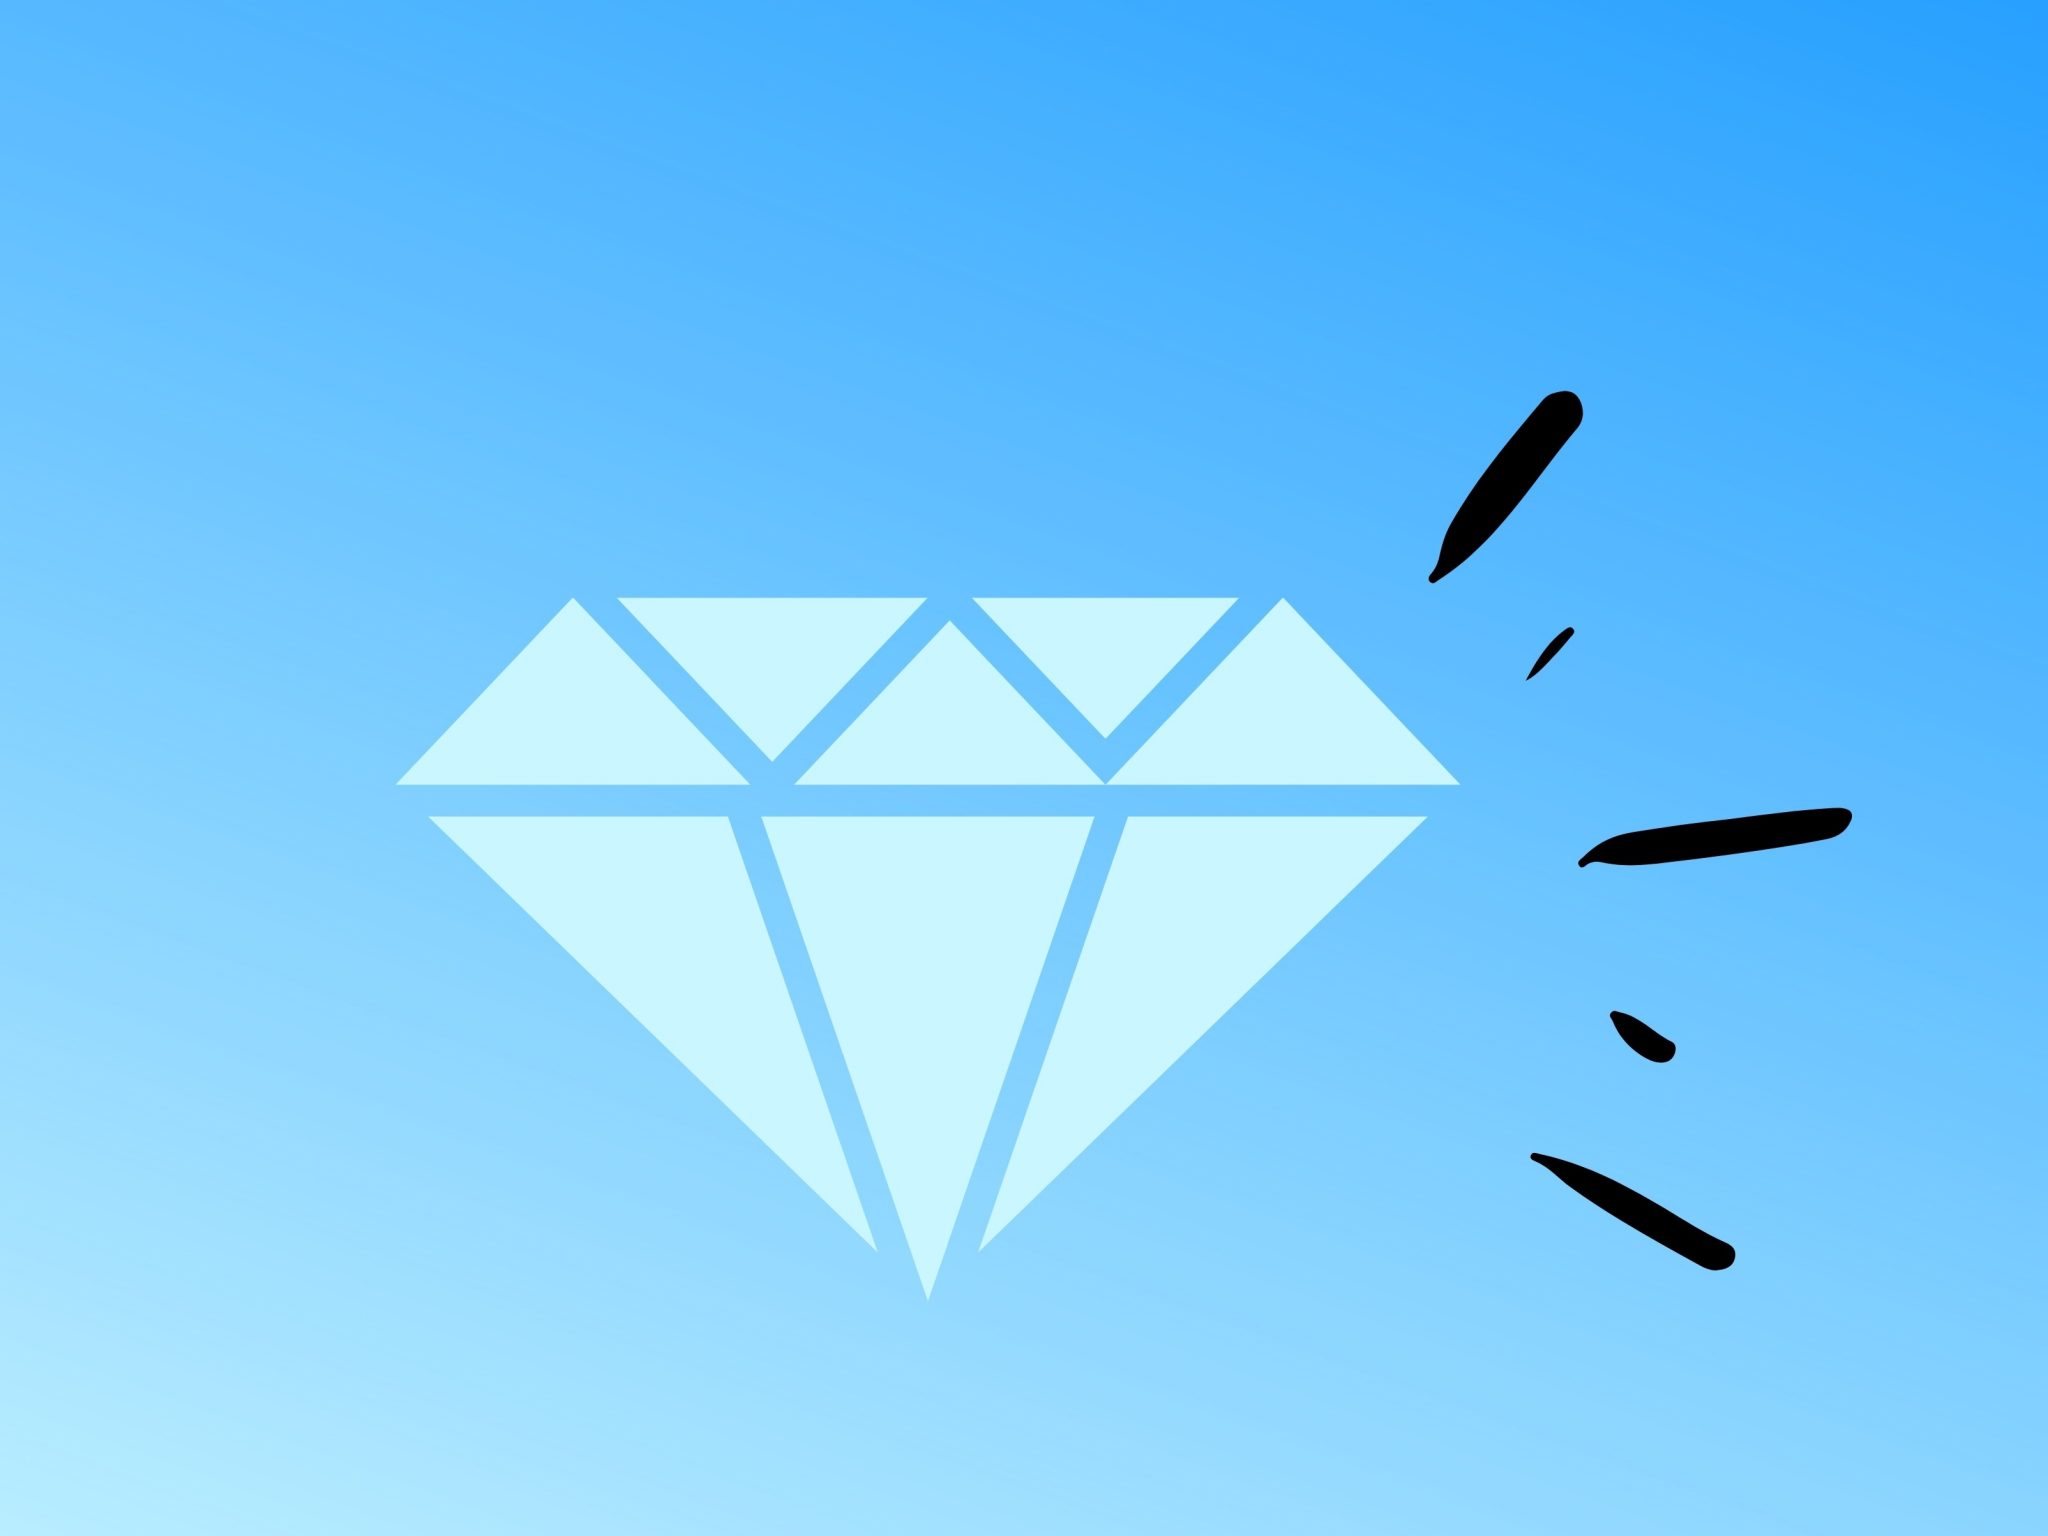 2048x1536 wallpaper Diamond Crystal Gem Luxury Blue iPad Wallpaper 2048x1536 pixels resolution